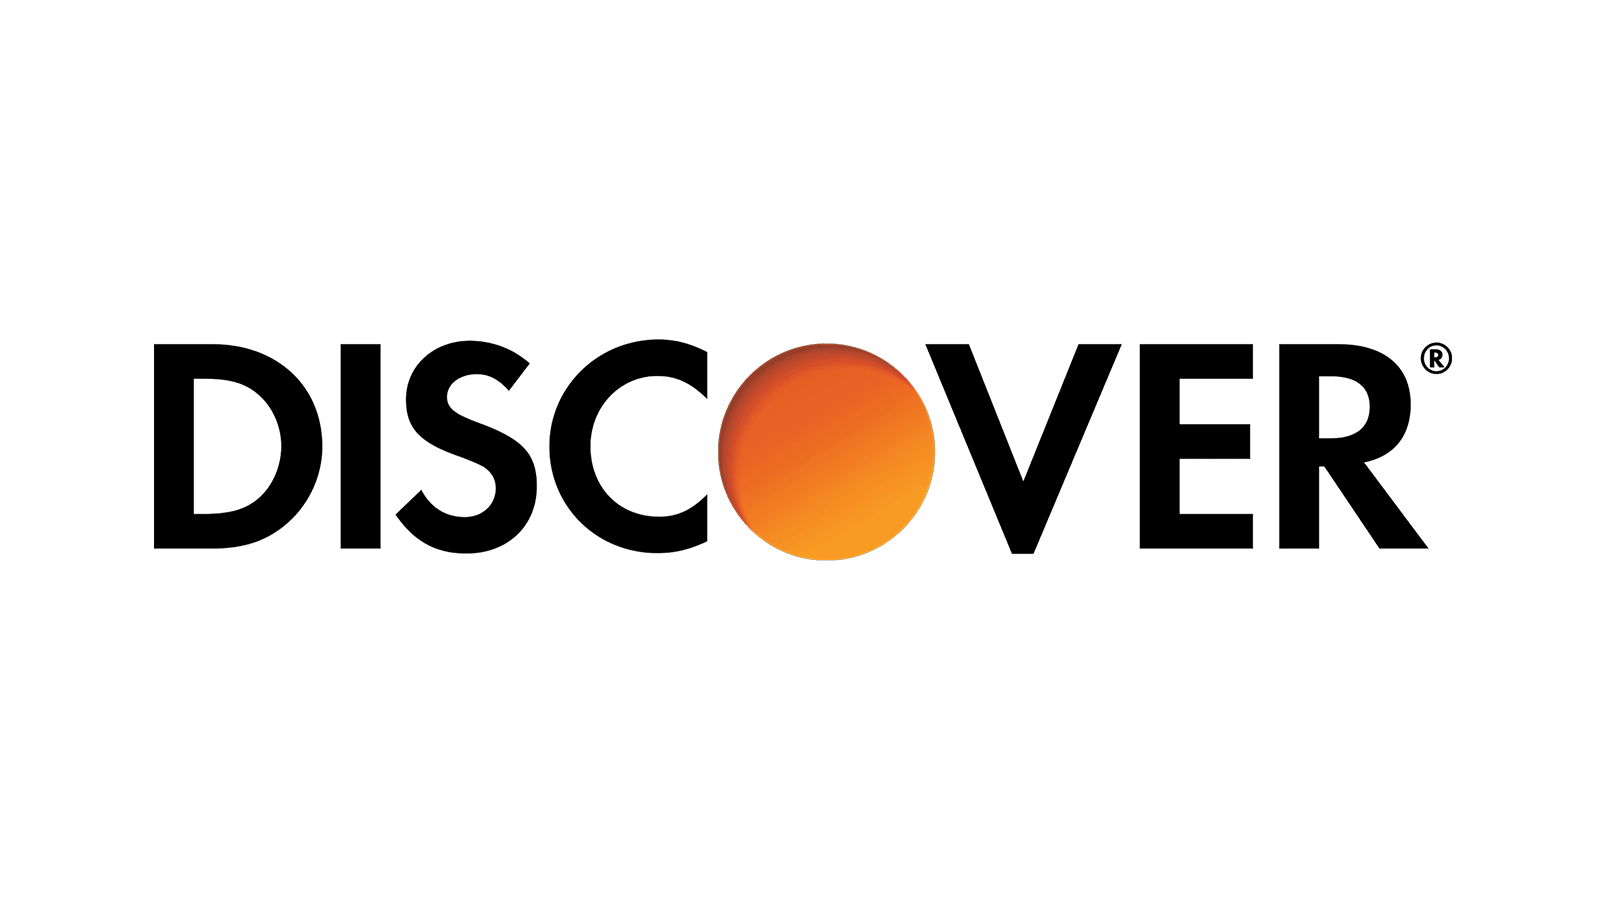 DISCOVER logo